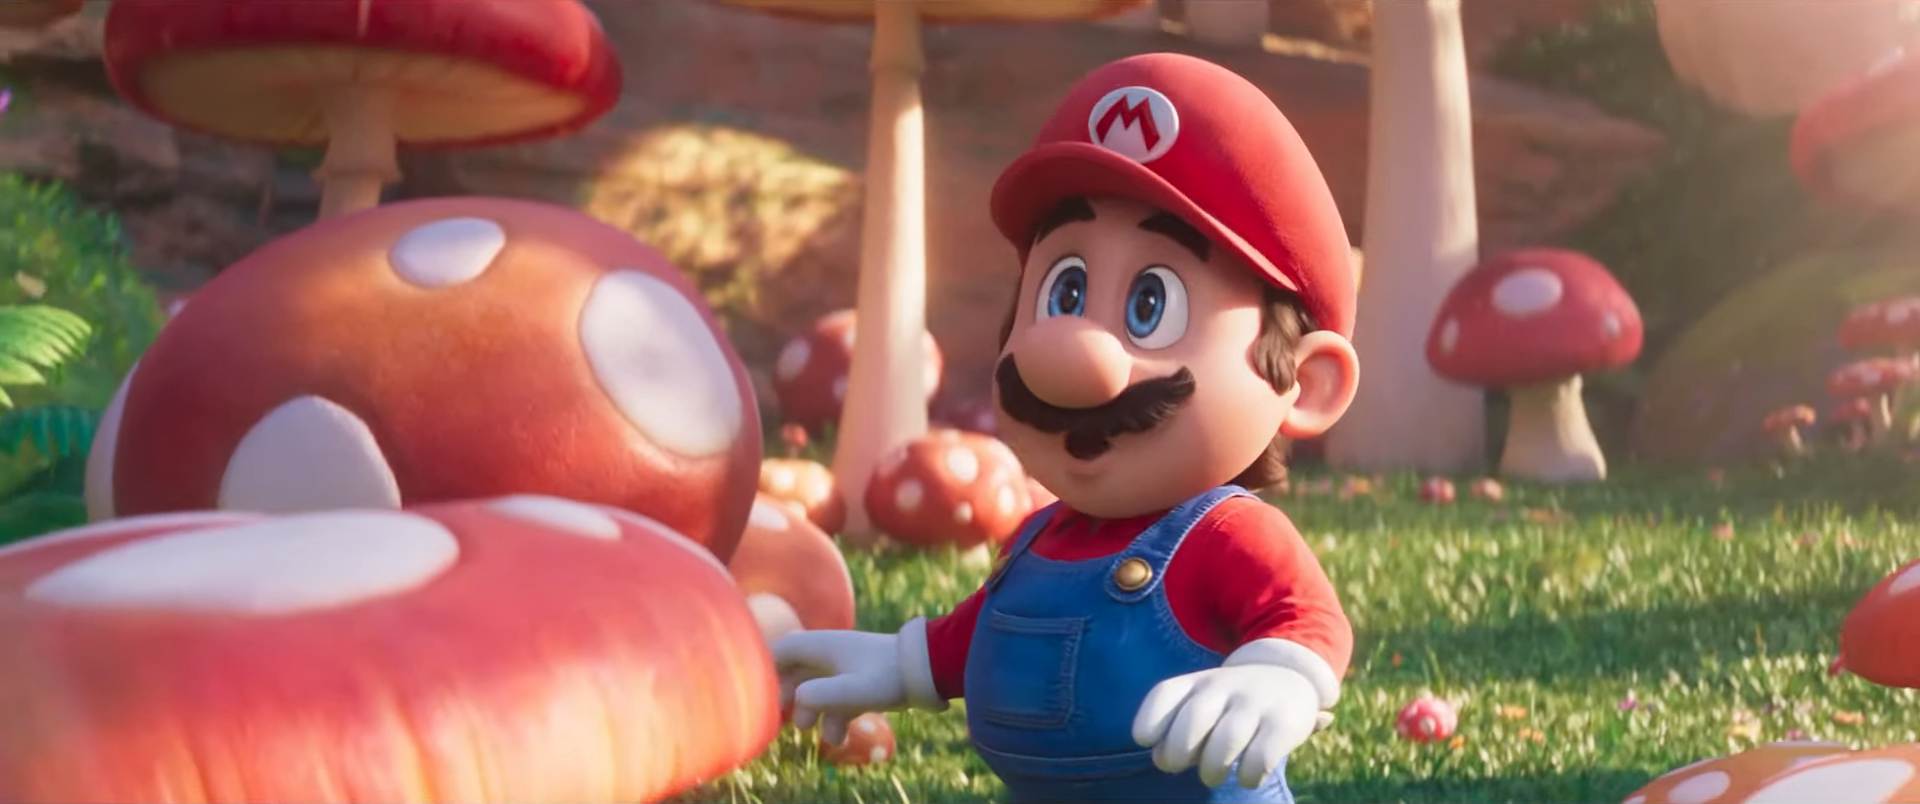 First Mario movie trailer